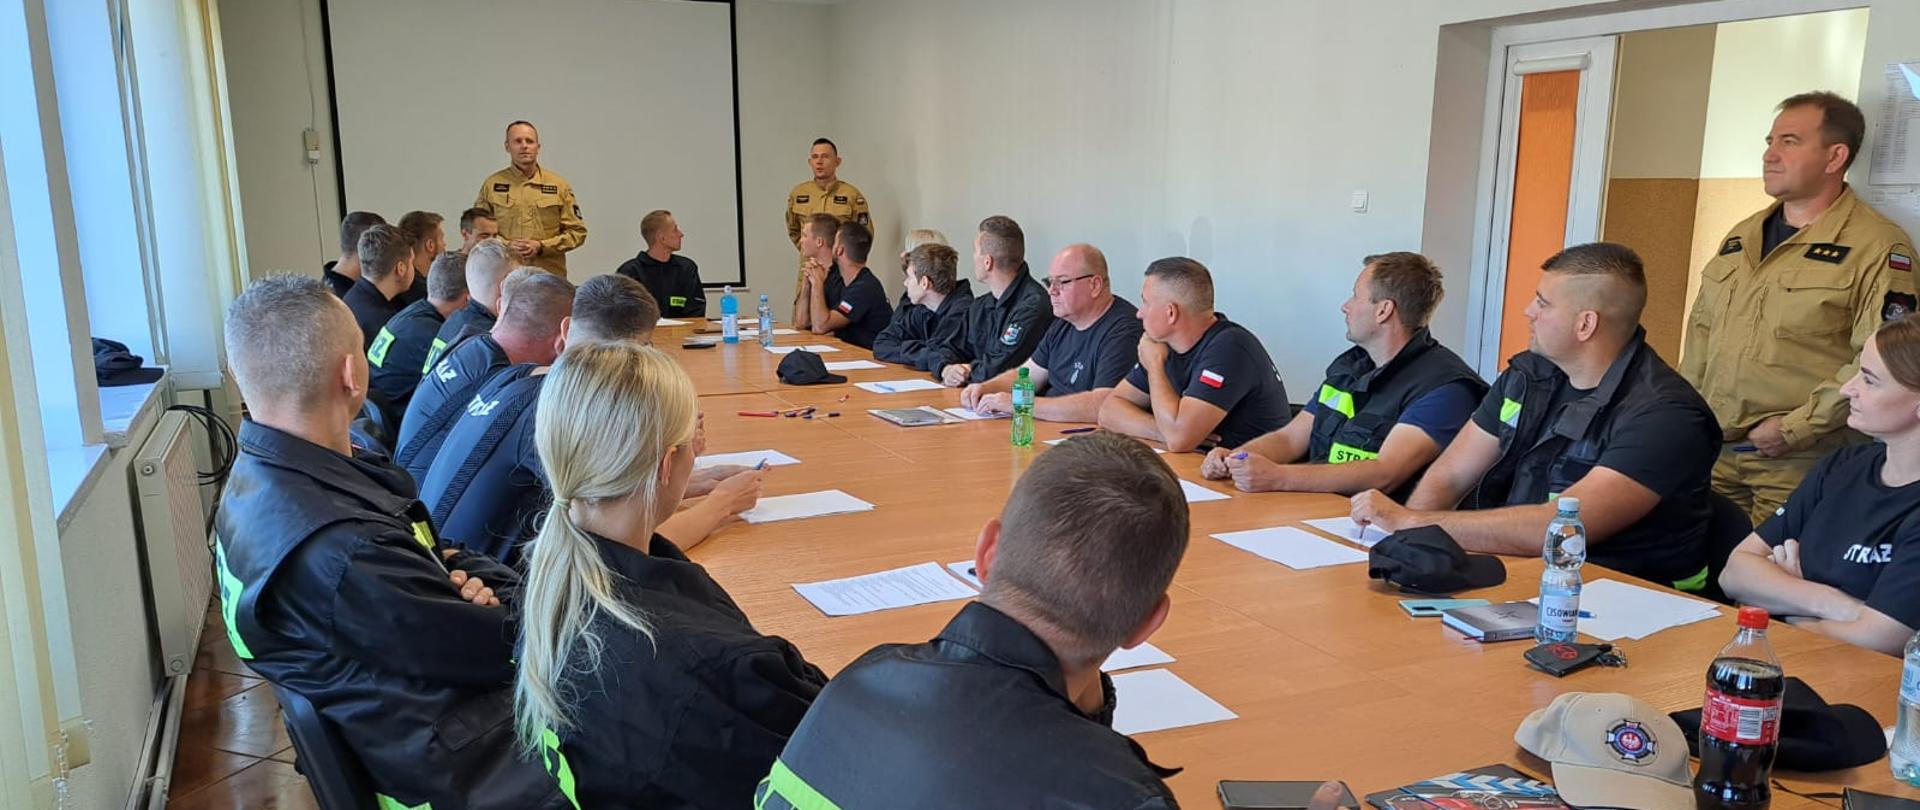 Zdjęcie przedstawia Egzamin teoretyczny szkolenia podstawowego OSP, strażacy siedzą przy stalach i rozwiązują test.